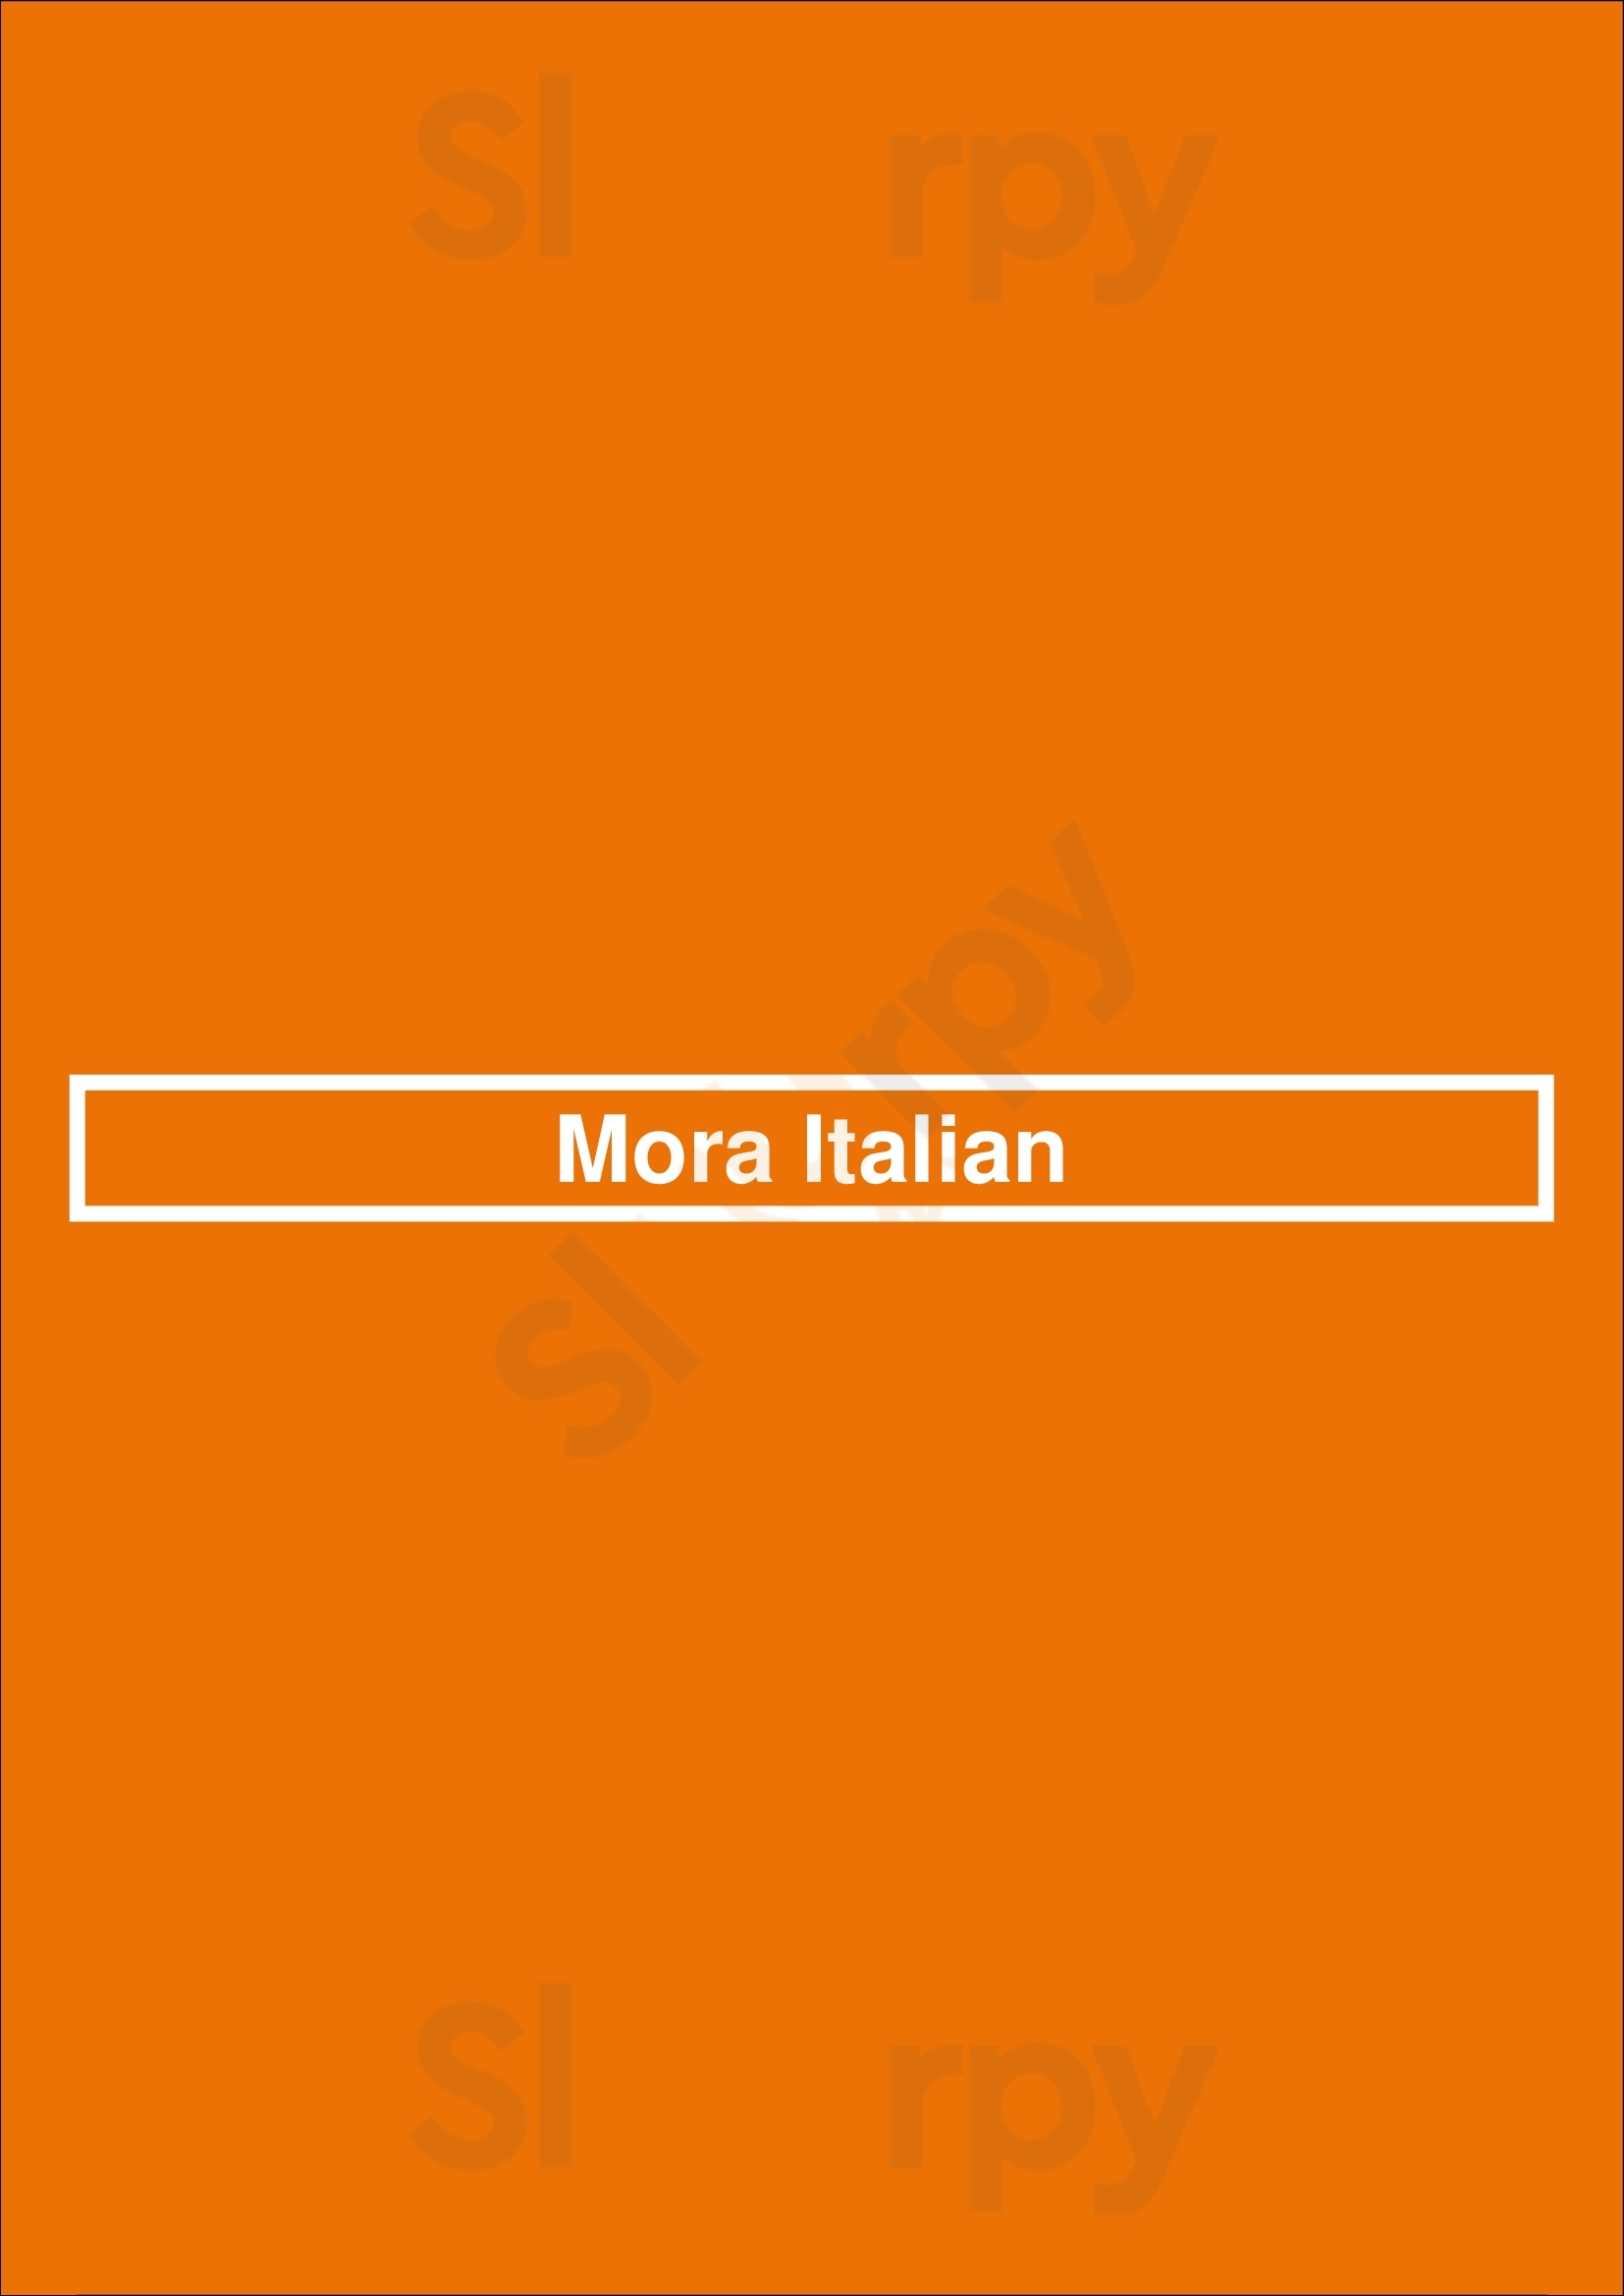 Mora Italian Phoenix Menu - 1